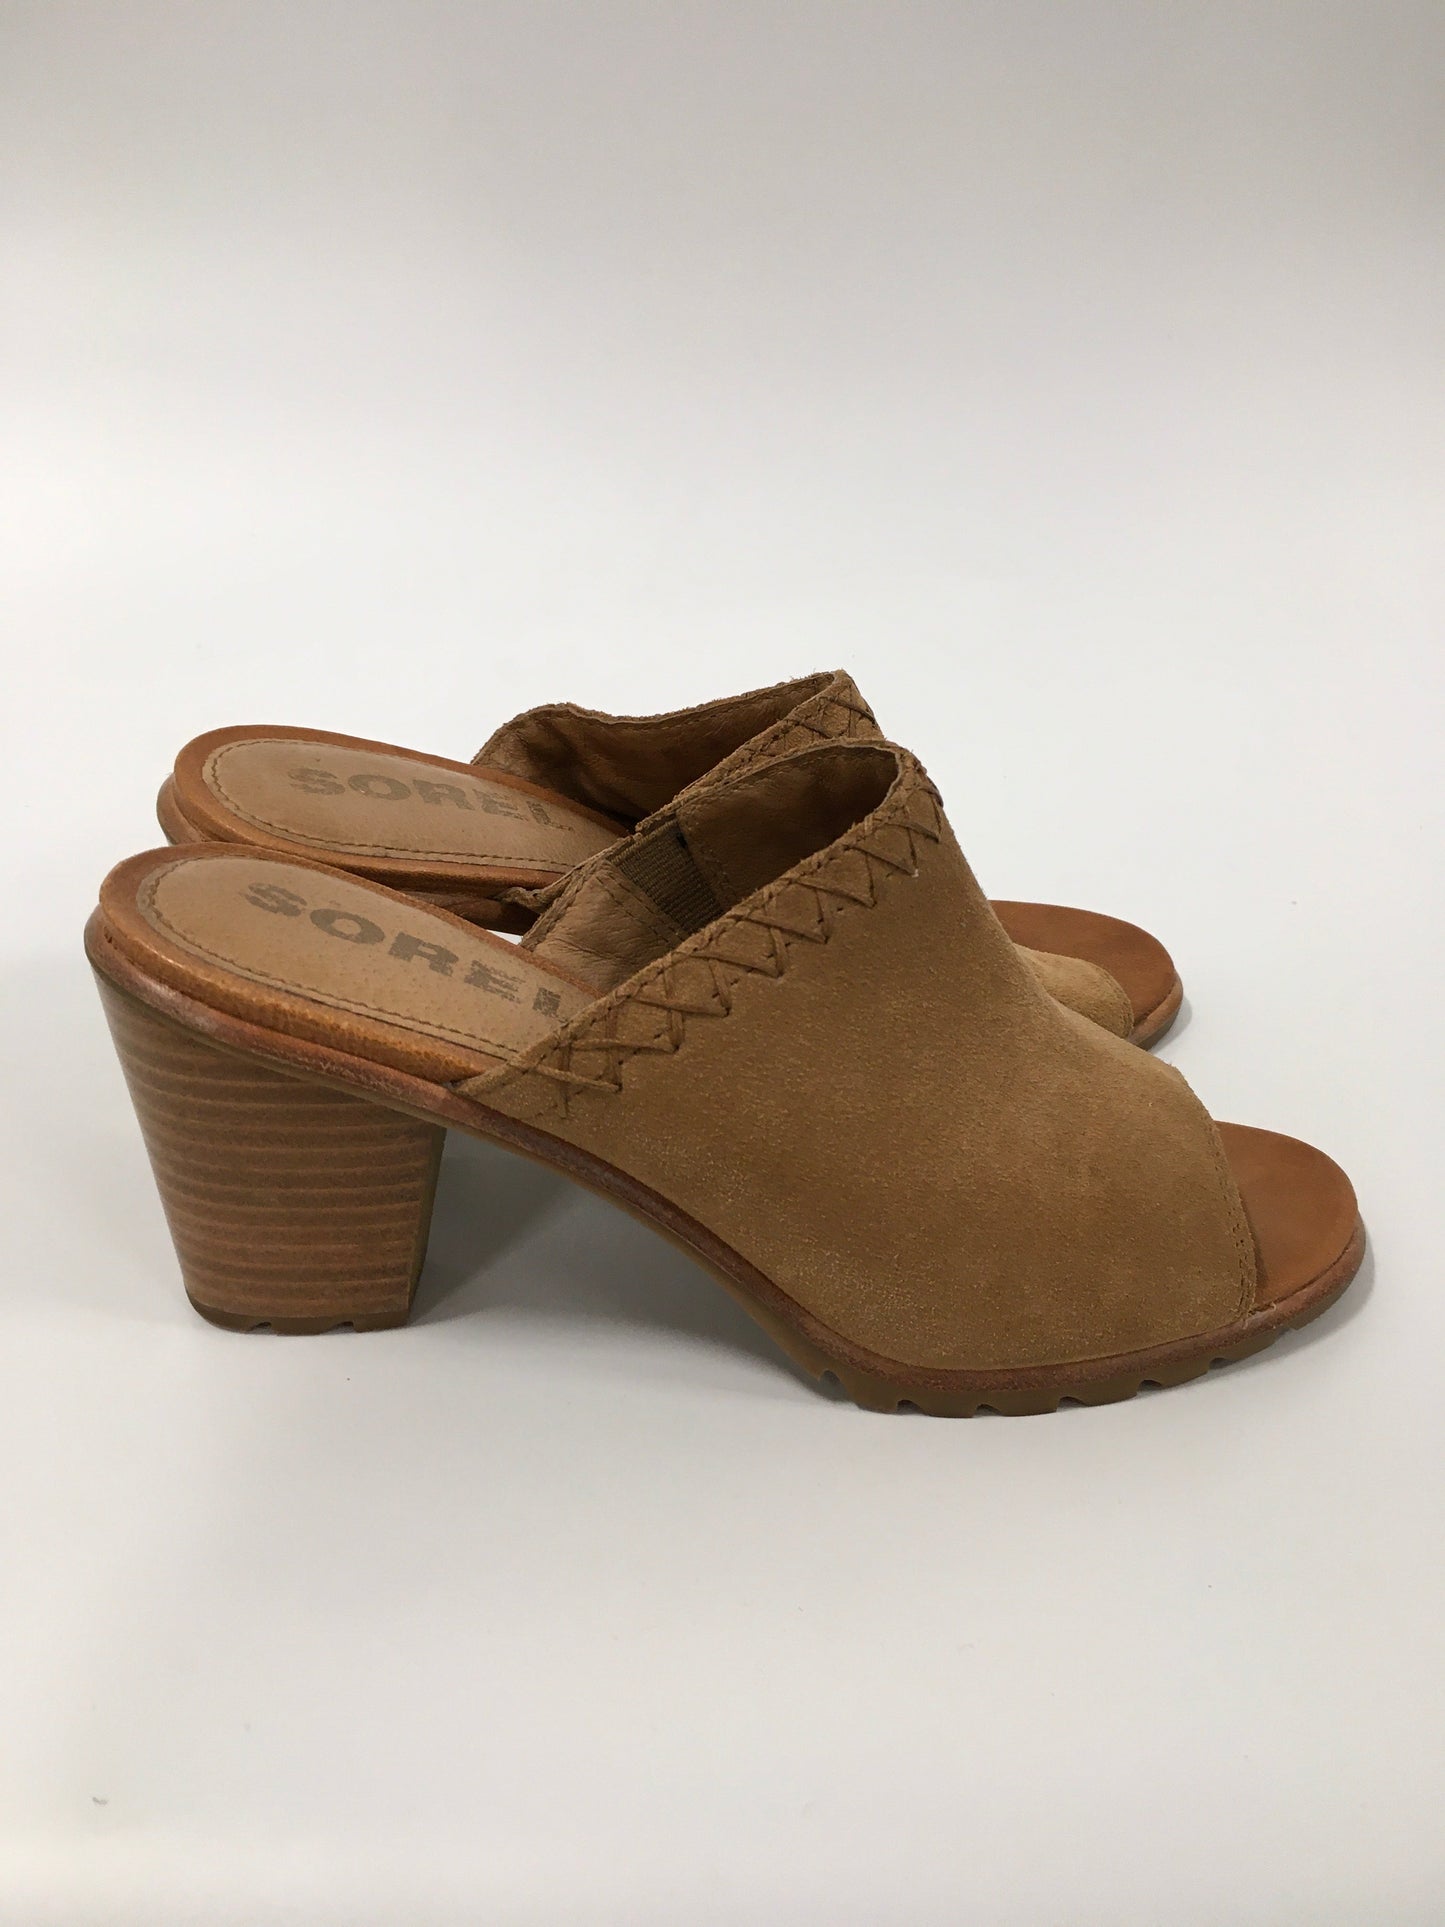 Tan Shoes Heels Block Sorel, Size 7.5